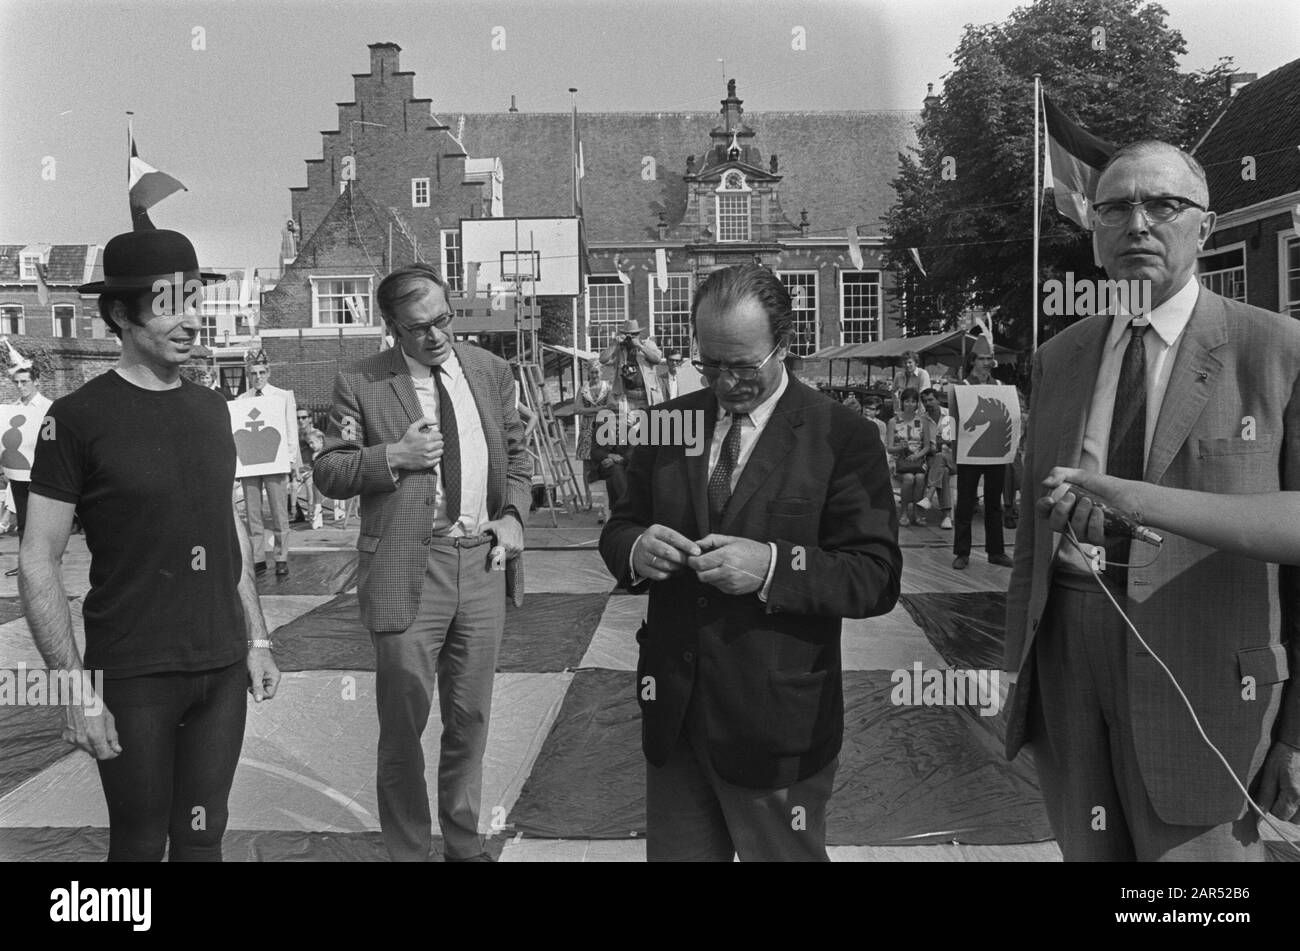 Godfried Bomans et Dr Max Euwe jouent au jeu d'échecs avec des pièces vivantes, Haarlem Date: 29 août 1970 lieu: Haarlem mots clés: Chess Personname: Bomans, Godfried, Dr. Max Euwe Banque D'Images